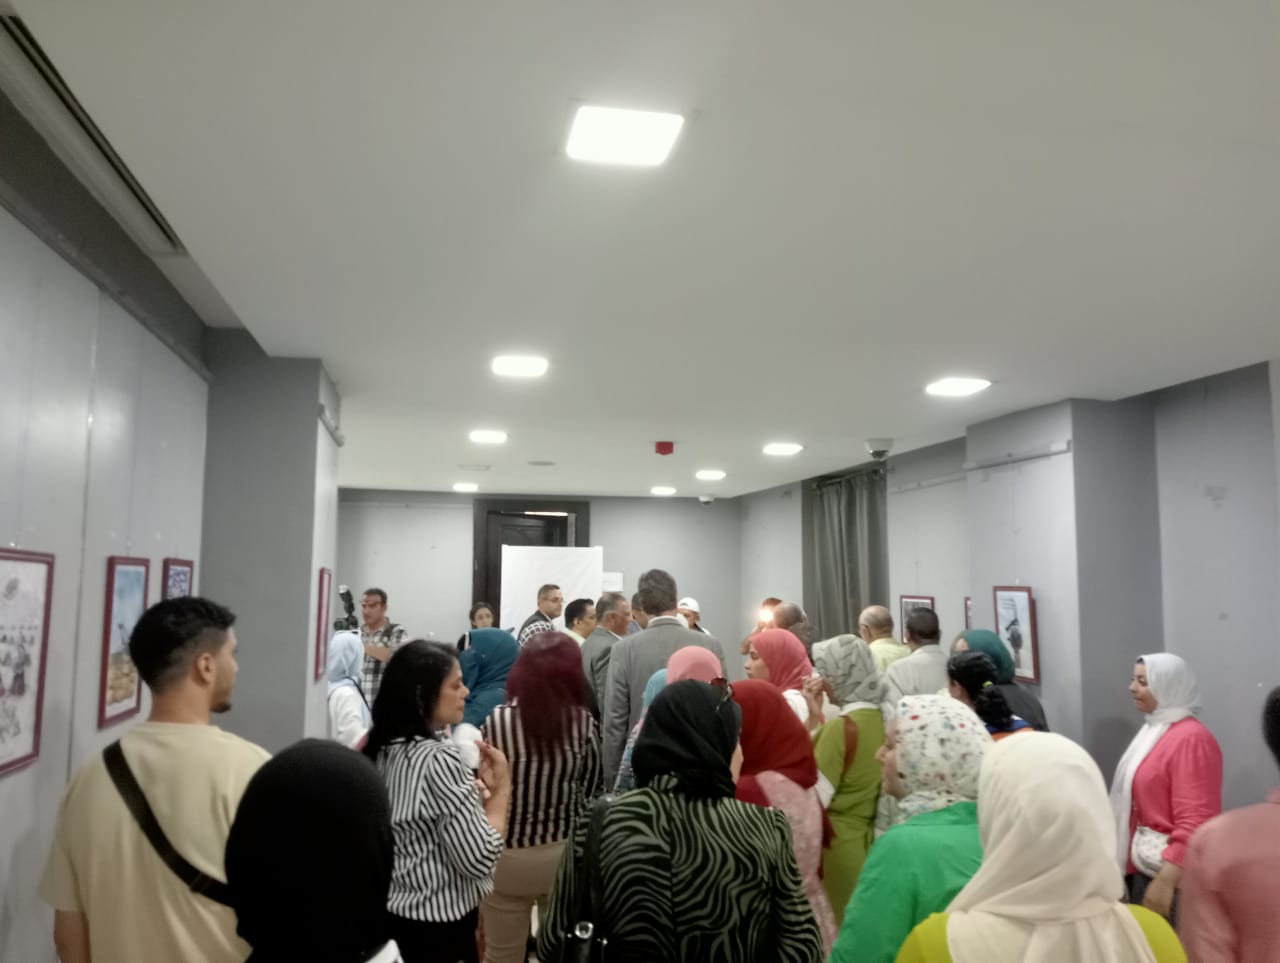 افتتاح معرض حياتنا بروح كاريكاتيرية "المناخ" في متحف الفن الإسلامي